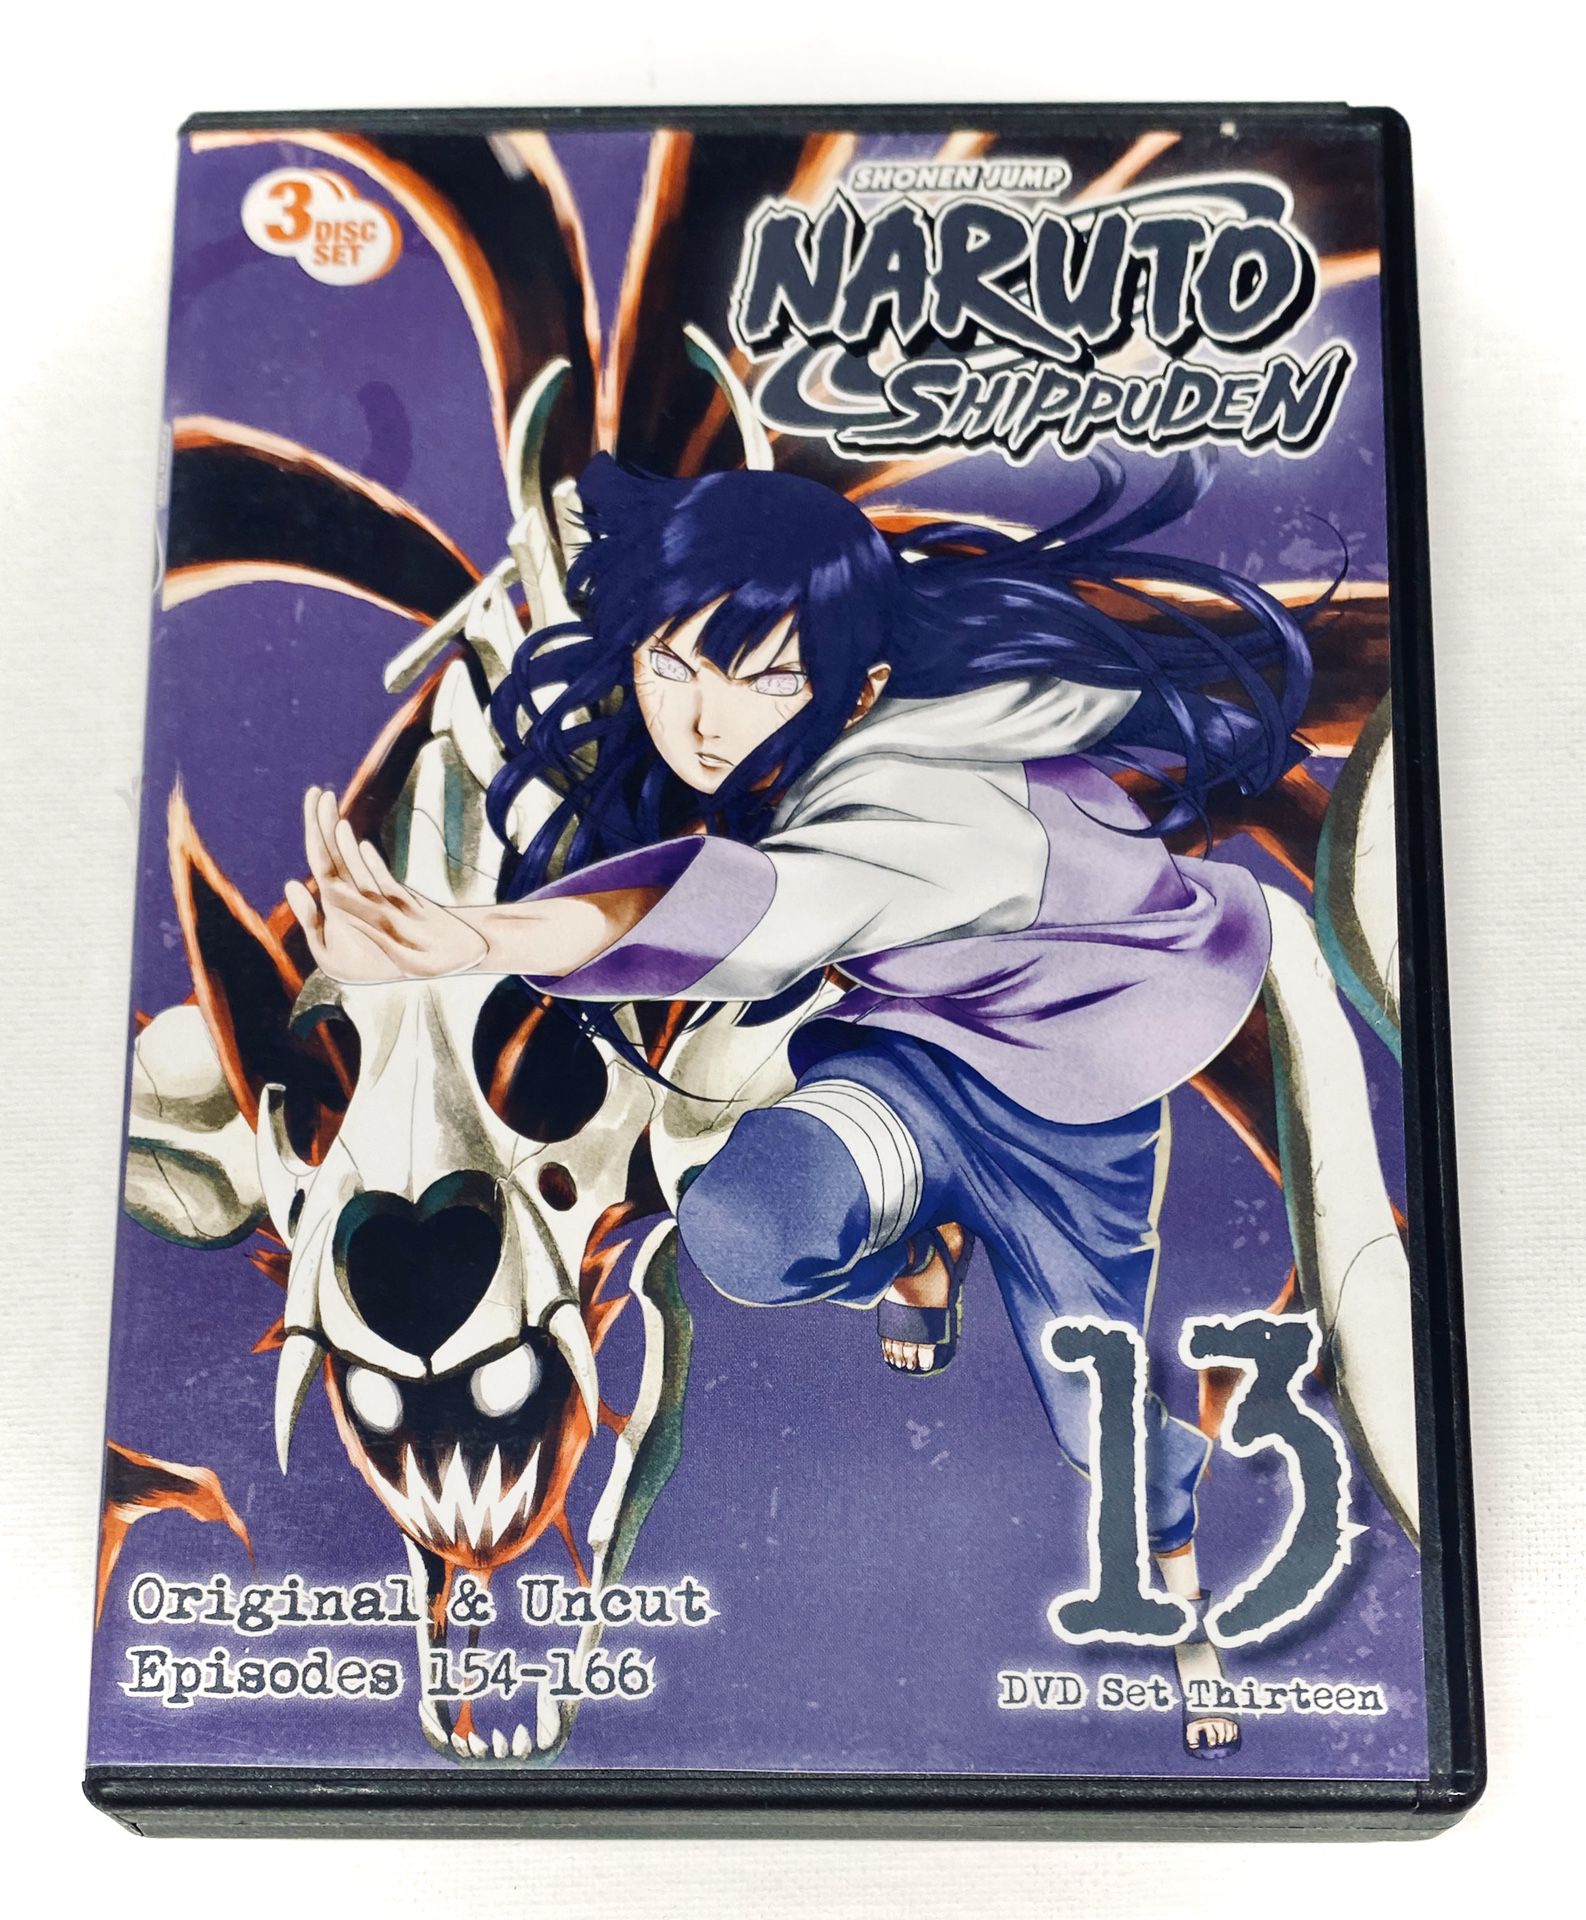 NARUTO “Shippuden” DVD Box Set #13 - NEW